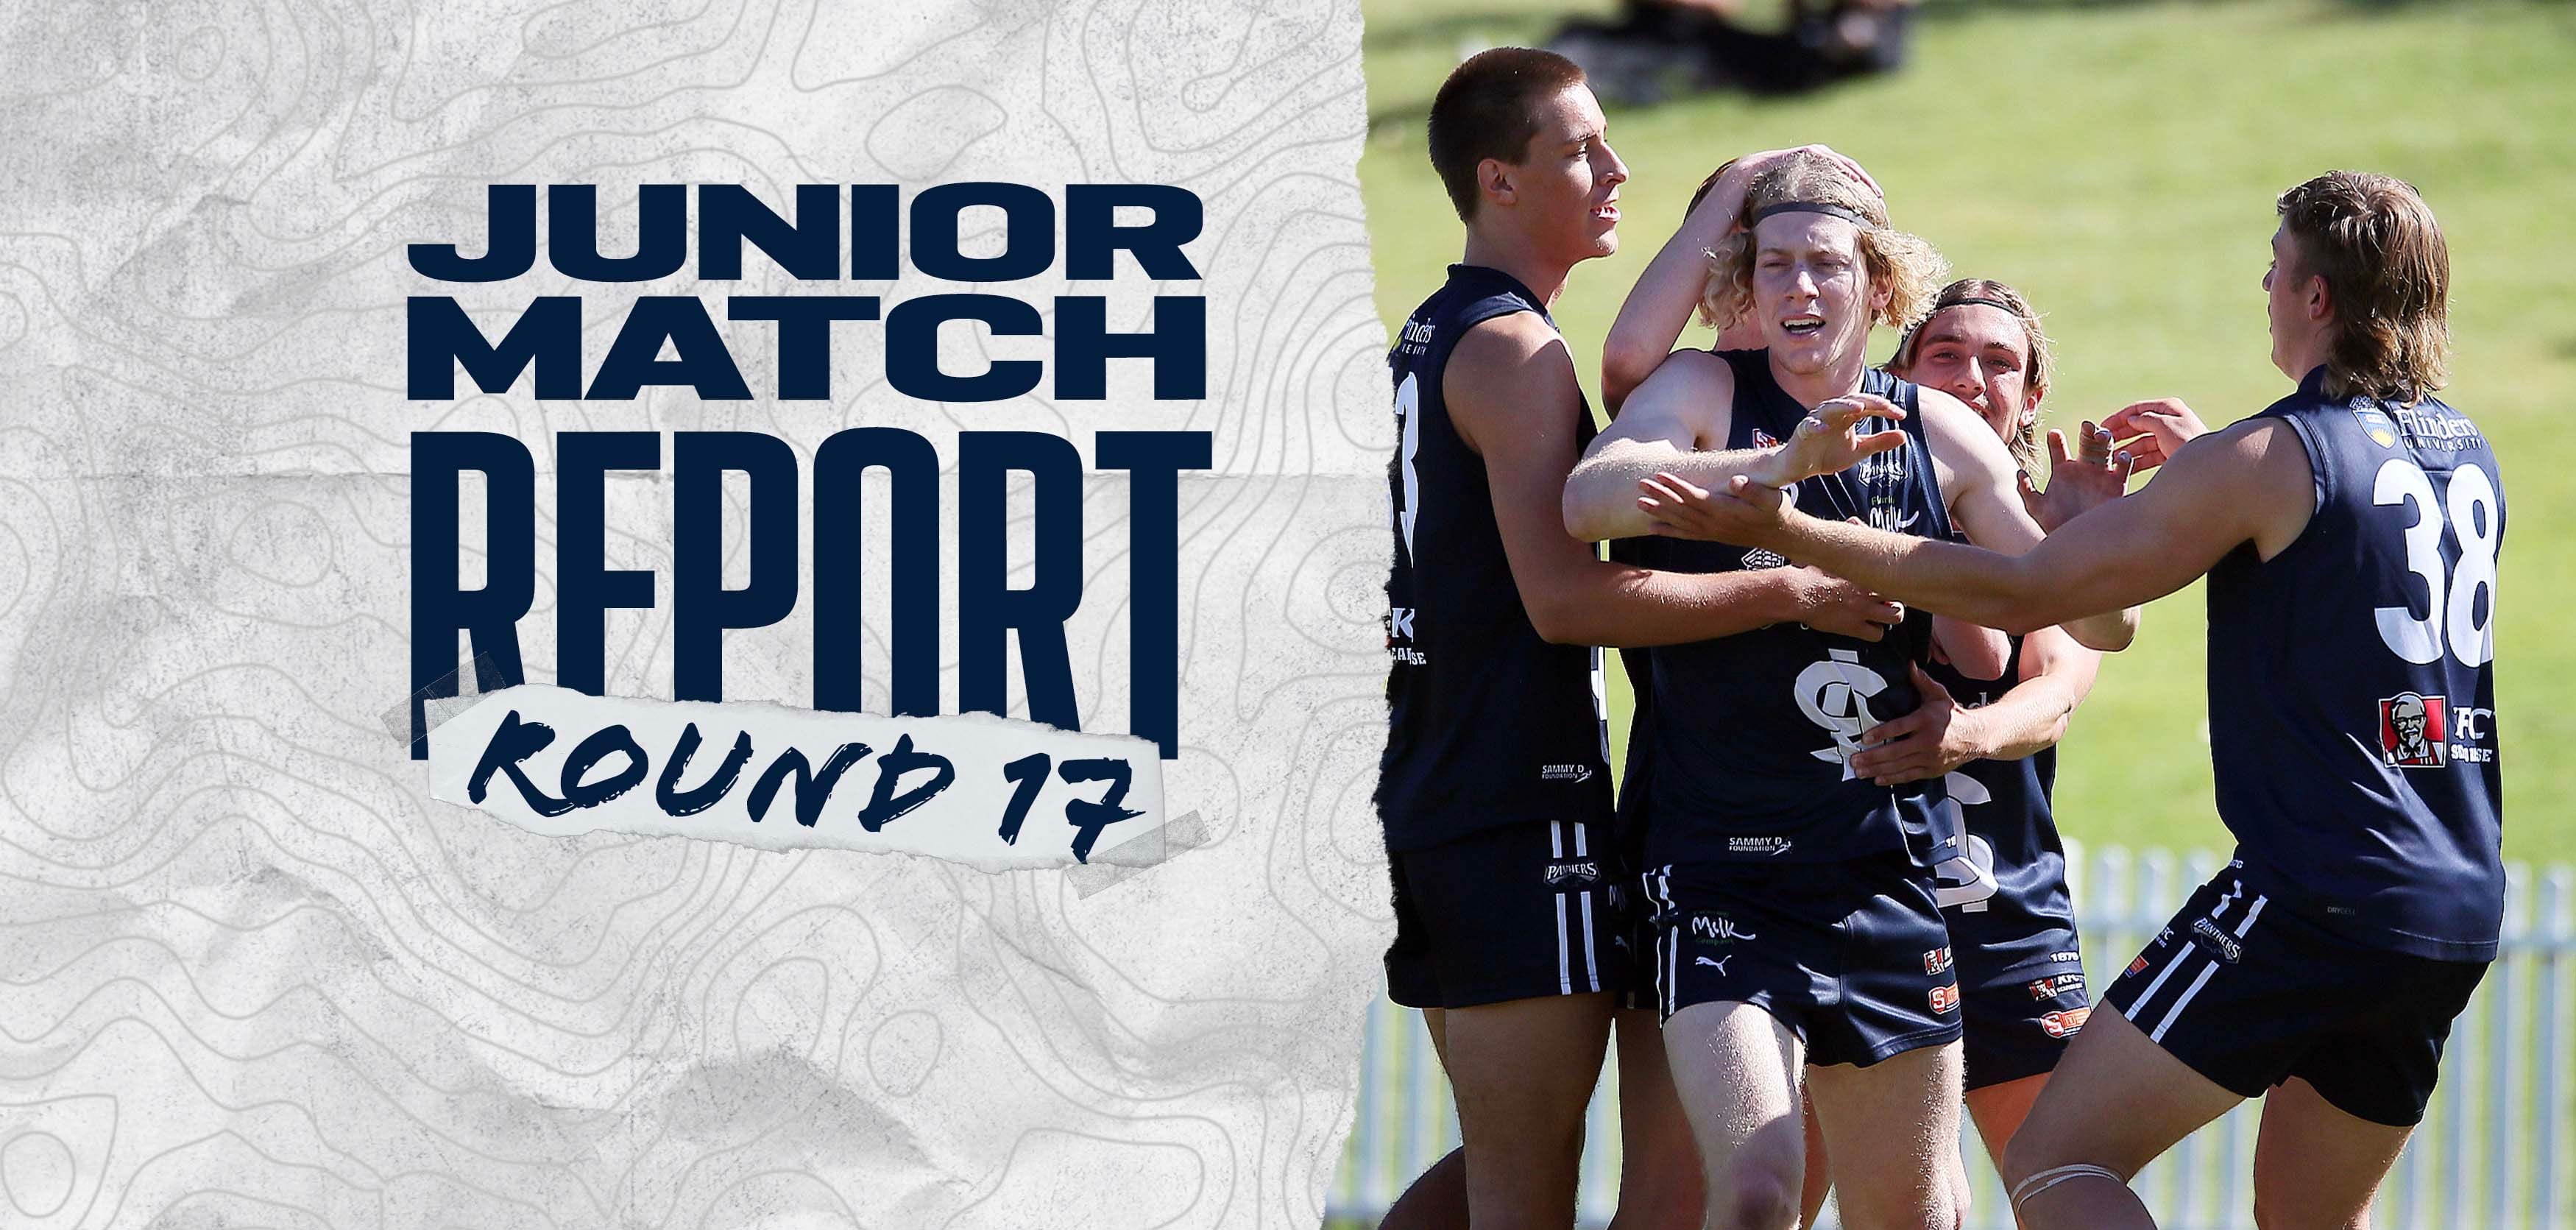 U16 & U18 Match Report: Round 17 @ Central District